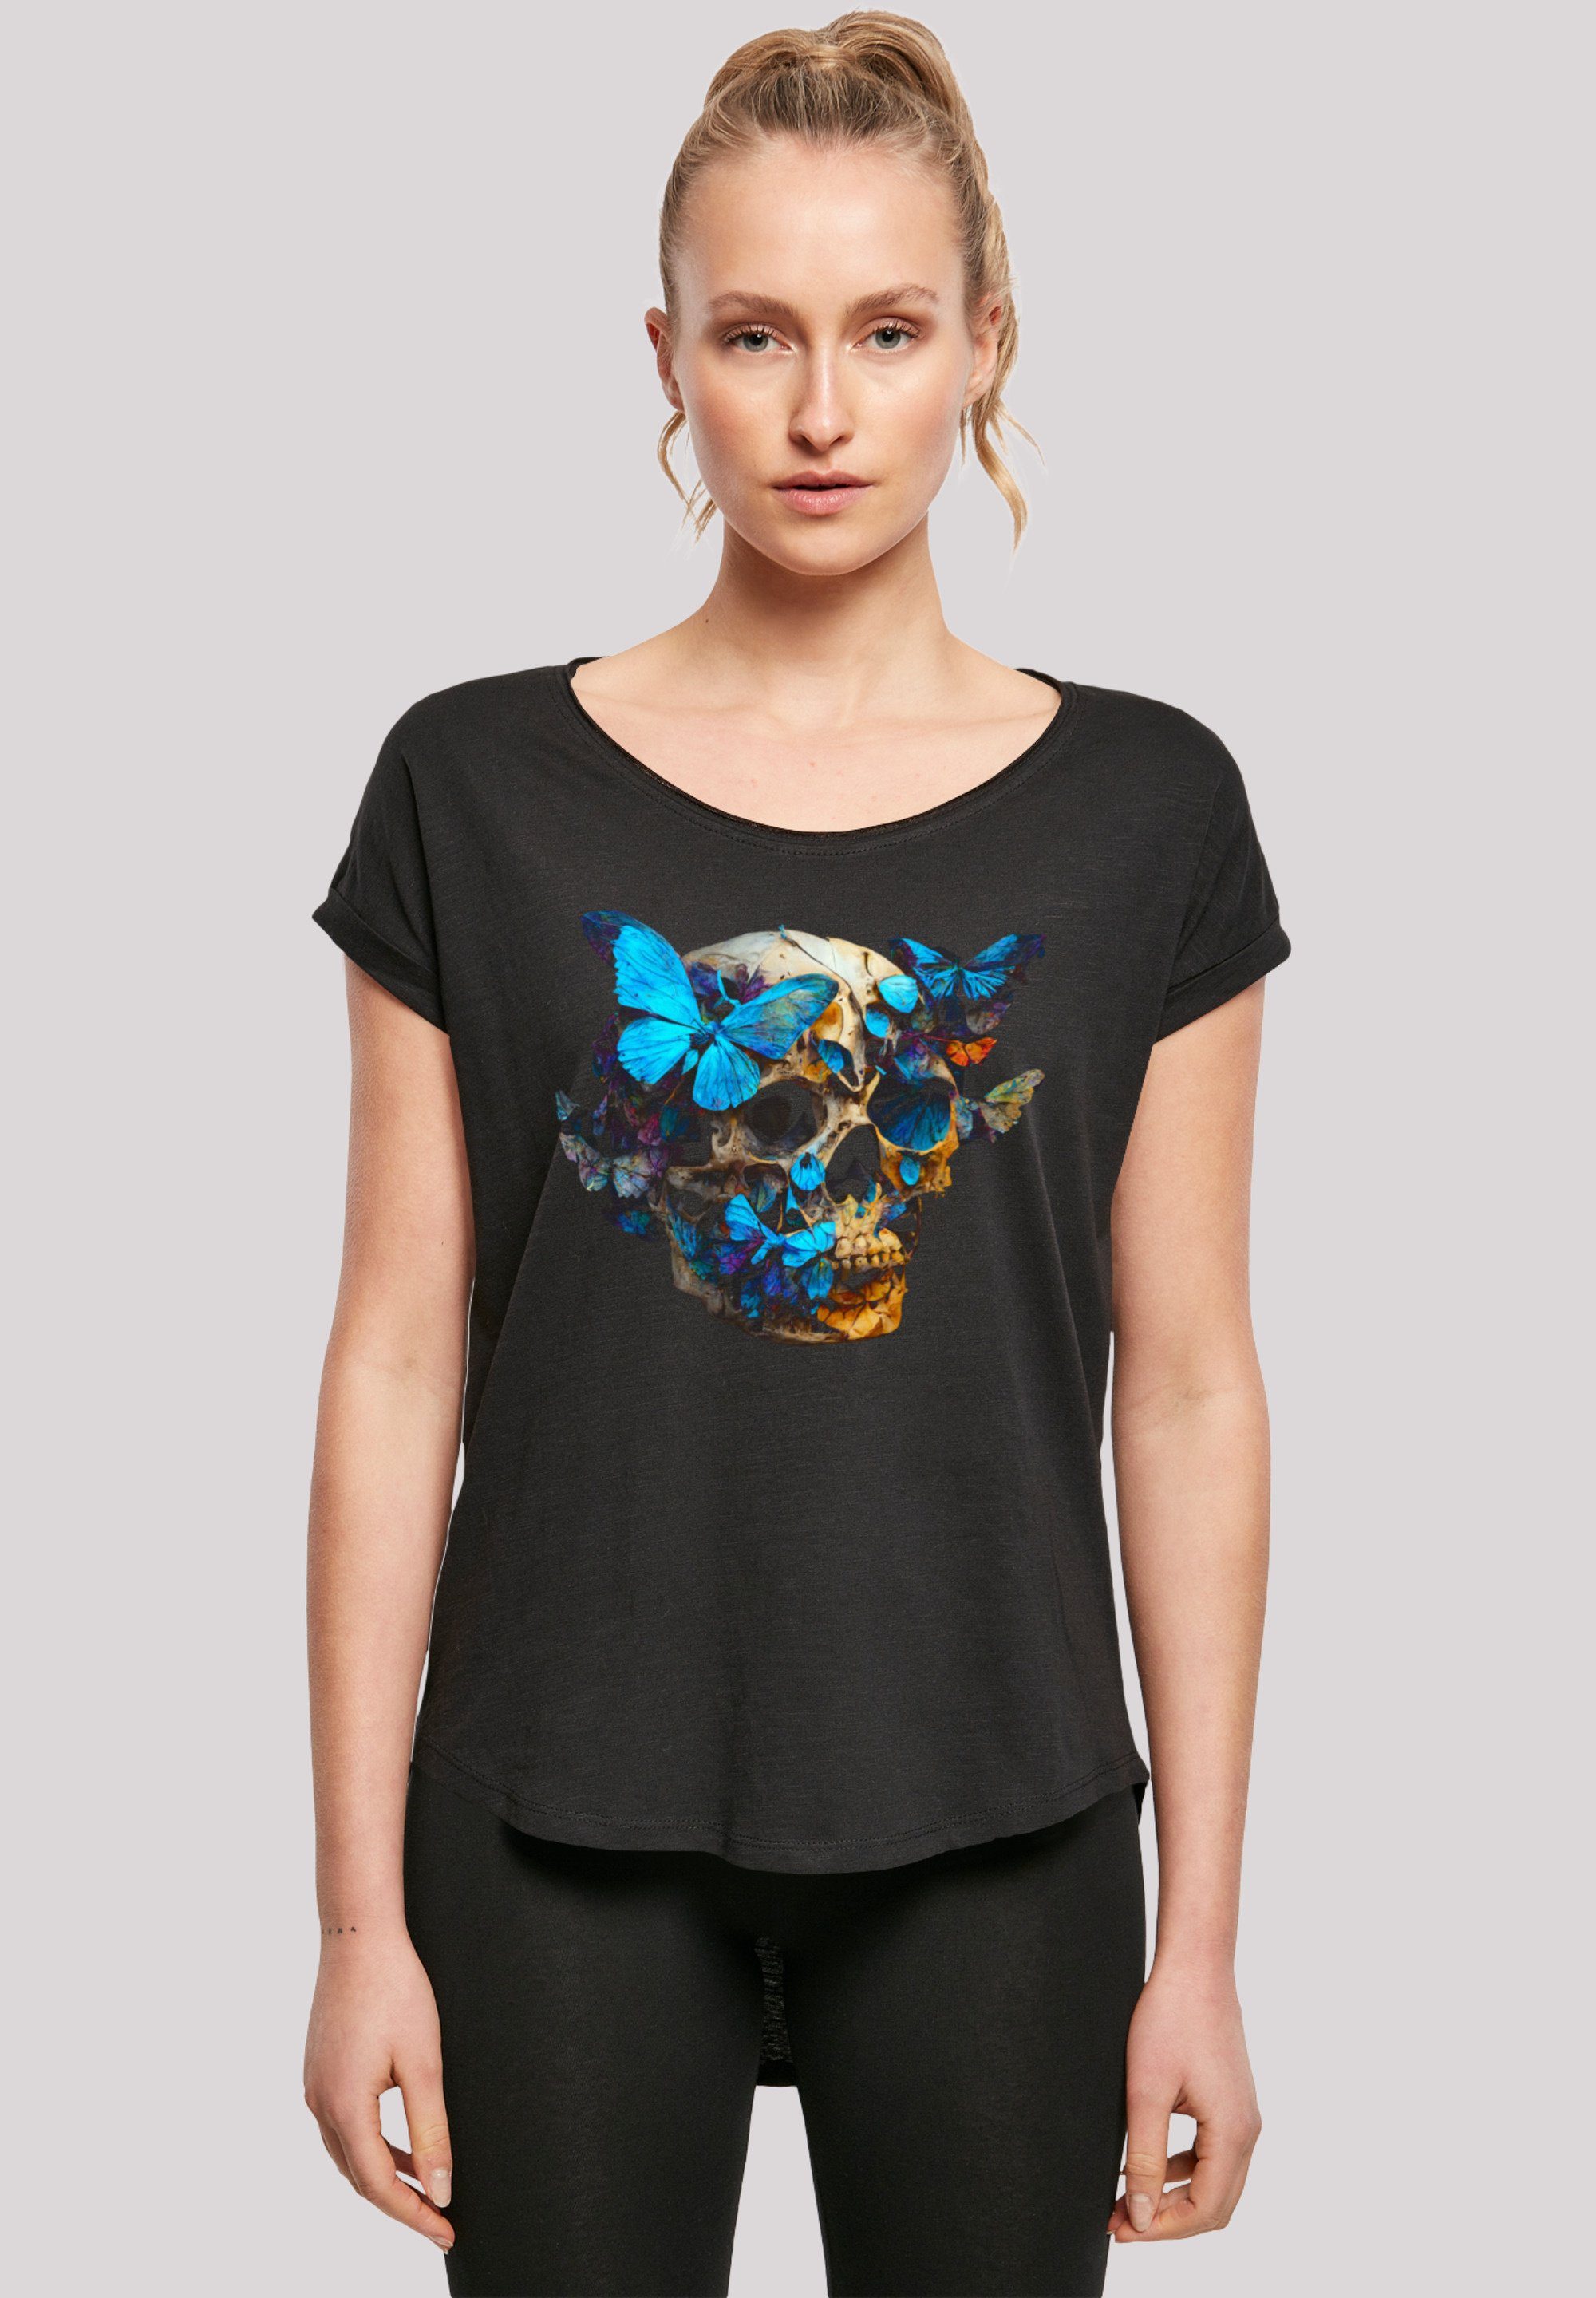 F4NT4STIC T-Shirt Schmetterling Skull LONG TEE Print, Sehr weicher  Baumwollstoff mit hohem Tragekomfort